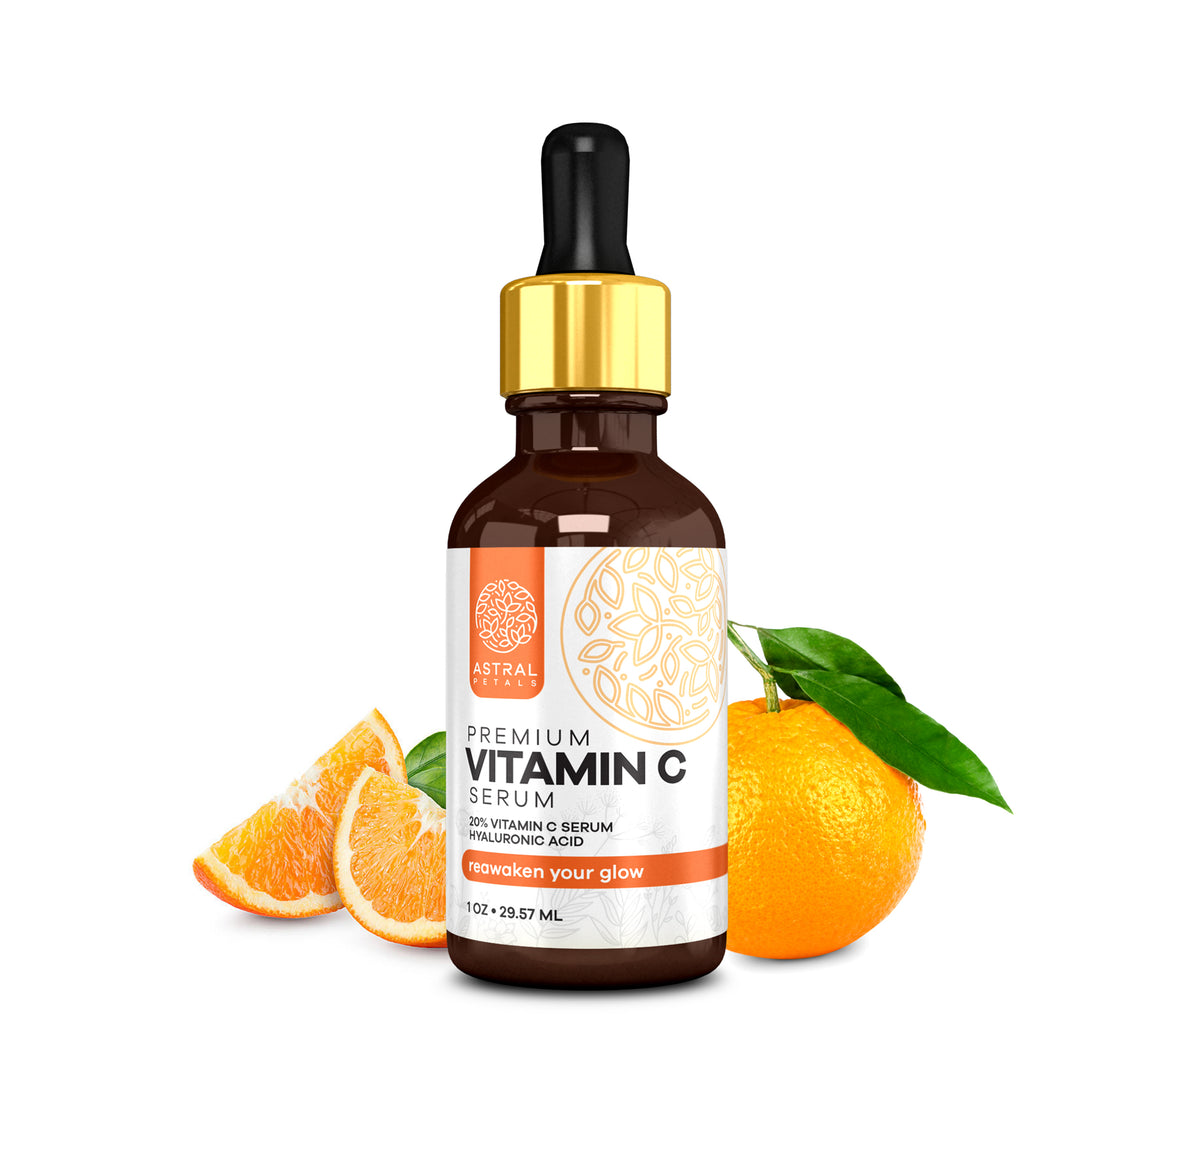 Premium Vitamin C SerumAstral PetalsSkin Care 20% Vitamin C Serum with